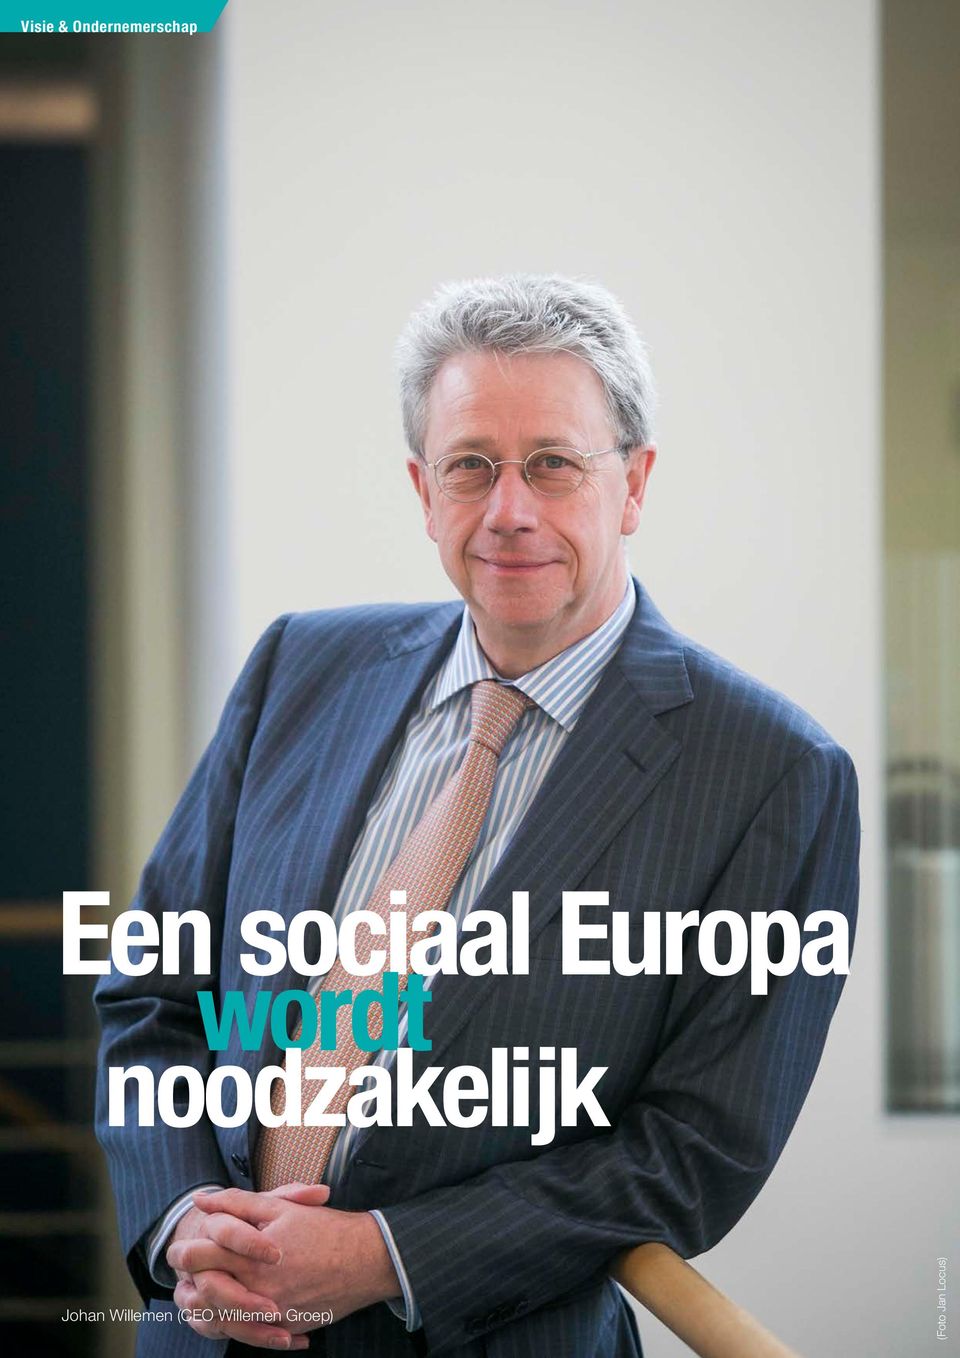 (CEO Willemen Groep) 6 mei